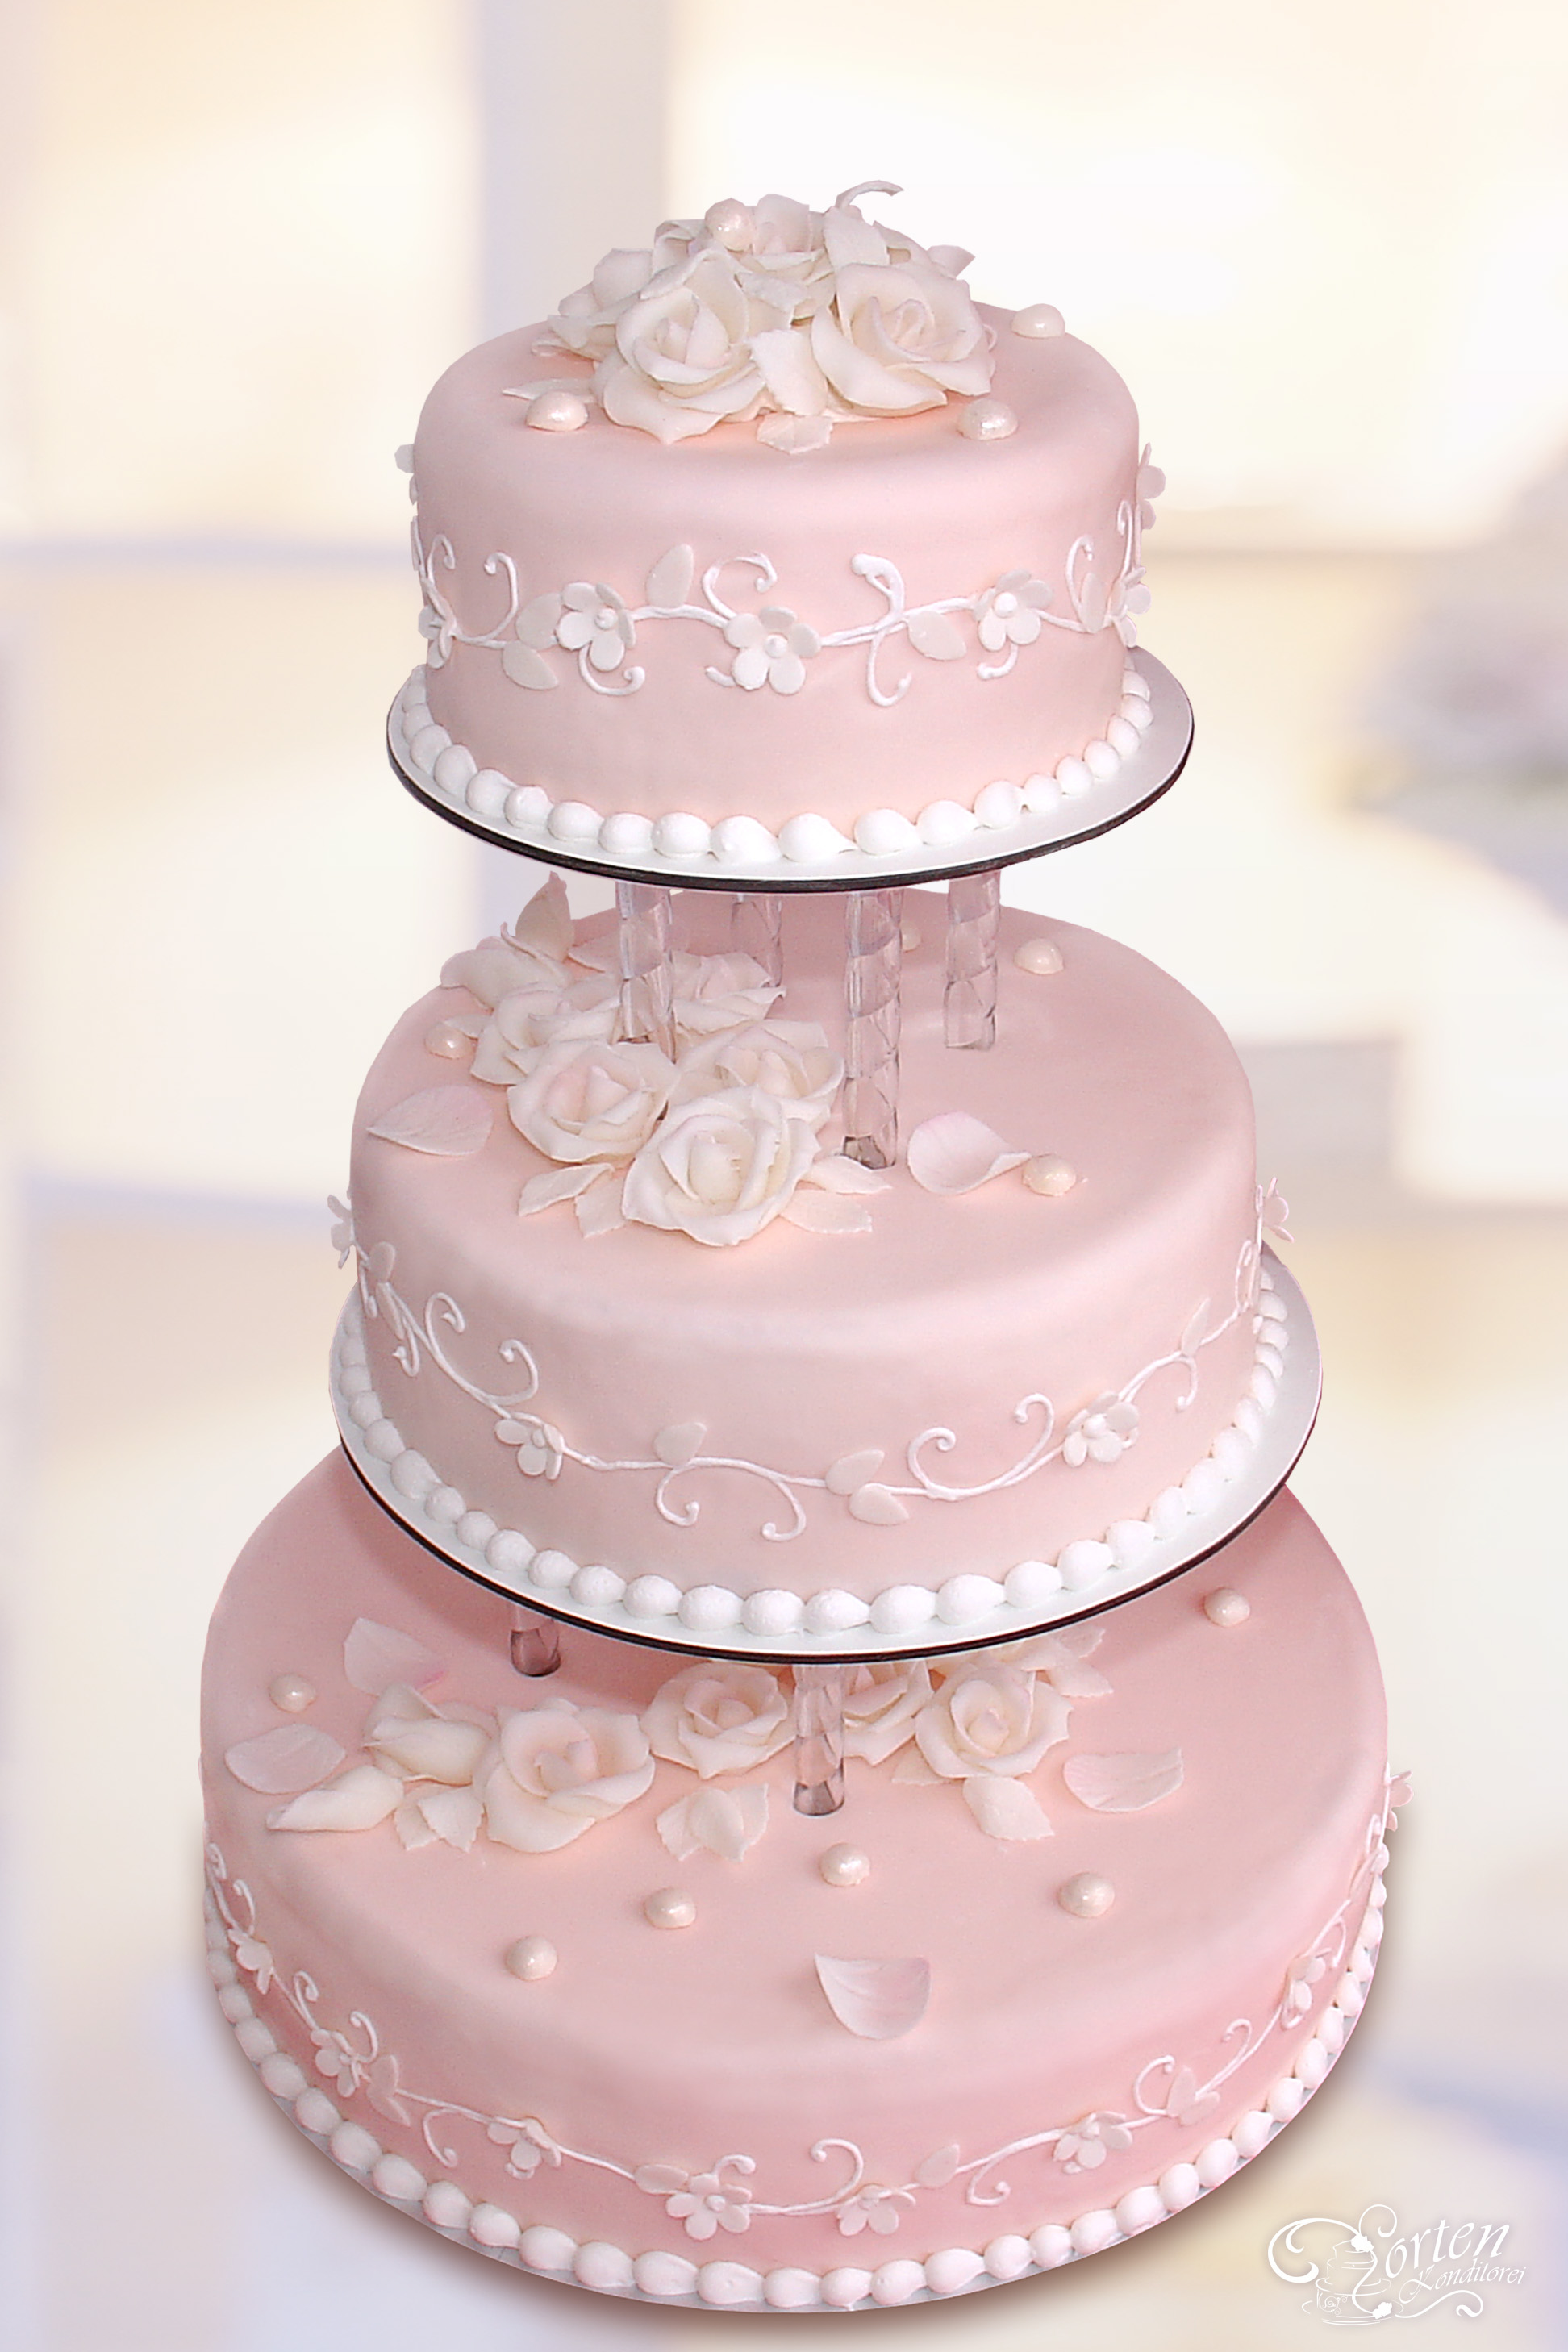 Für Romantiker: Dreistöckige Torte in pastell-rosa mit weißen Blüten und Schnörkeln sowie weißen Rosen und Blütenblättern.